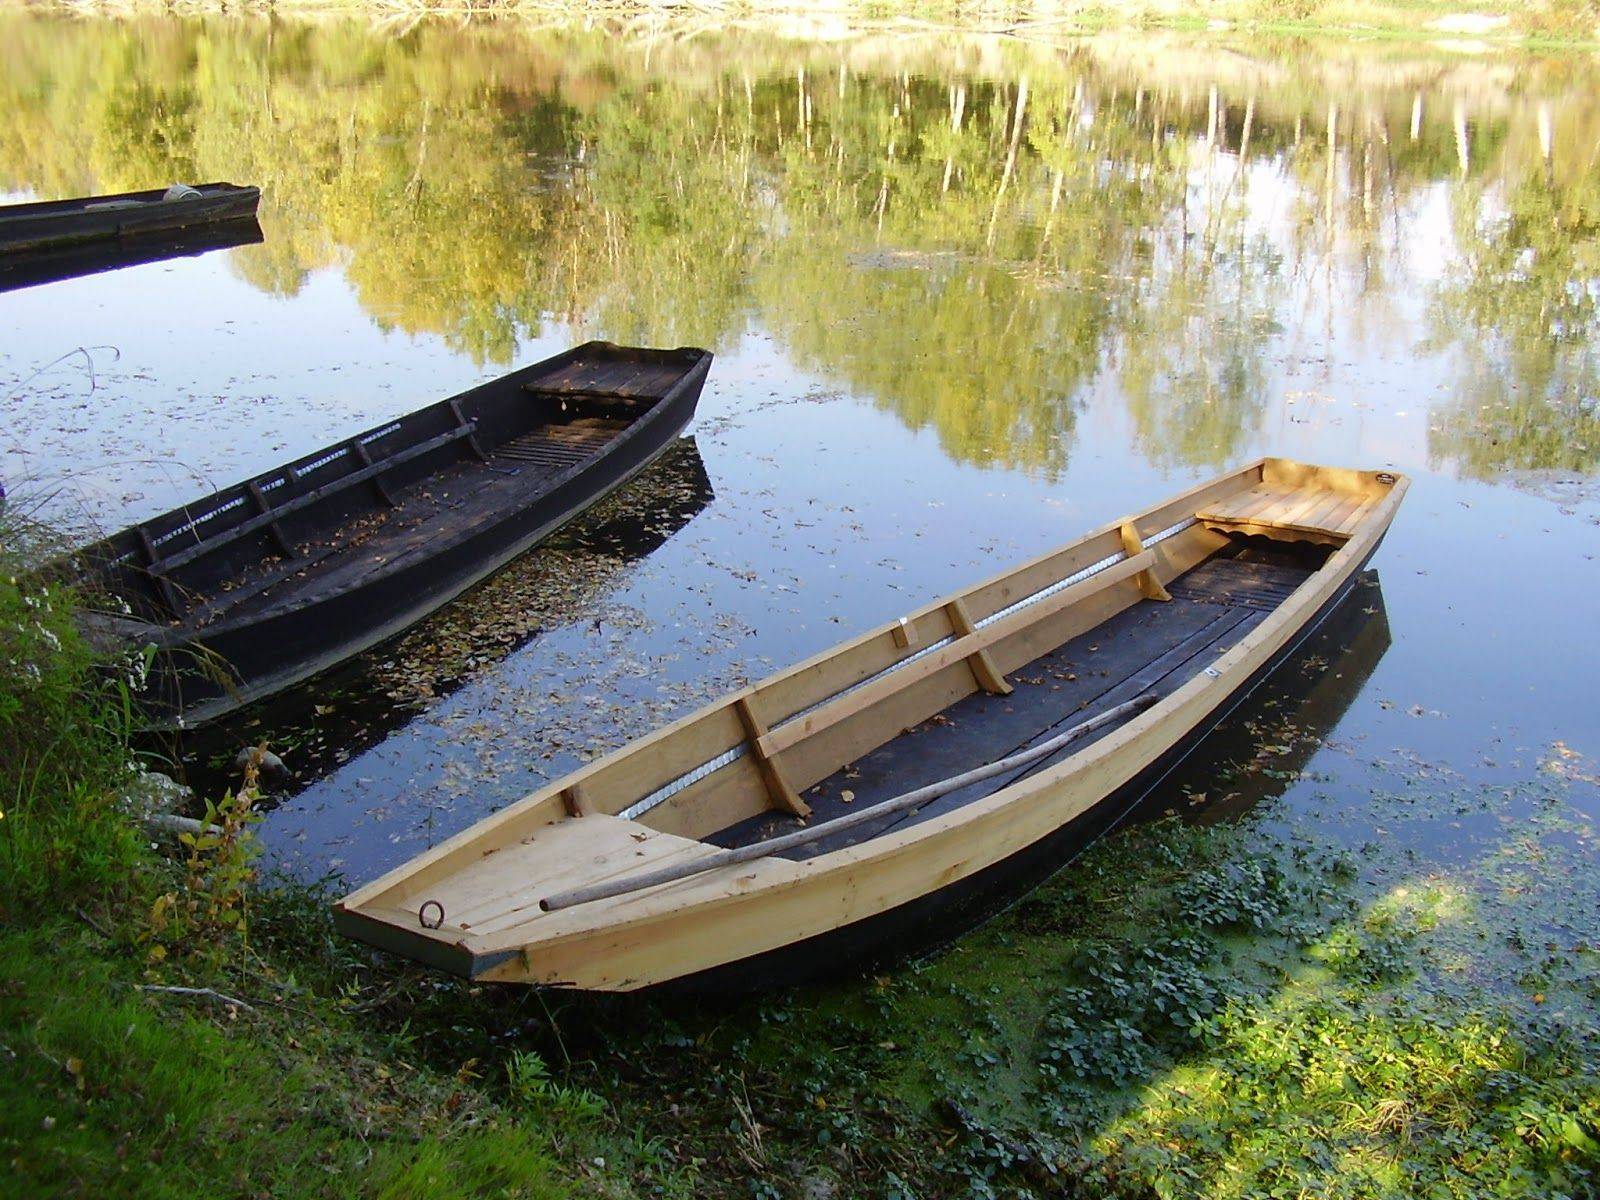 Деревянная лодка под мотор своими руками: этапы изготовления